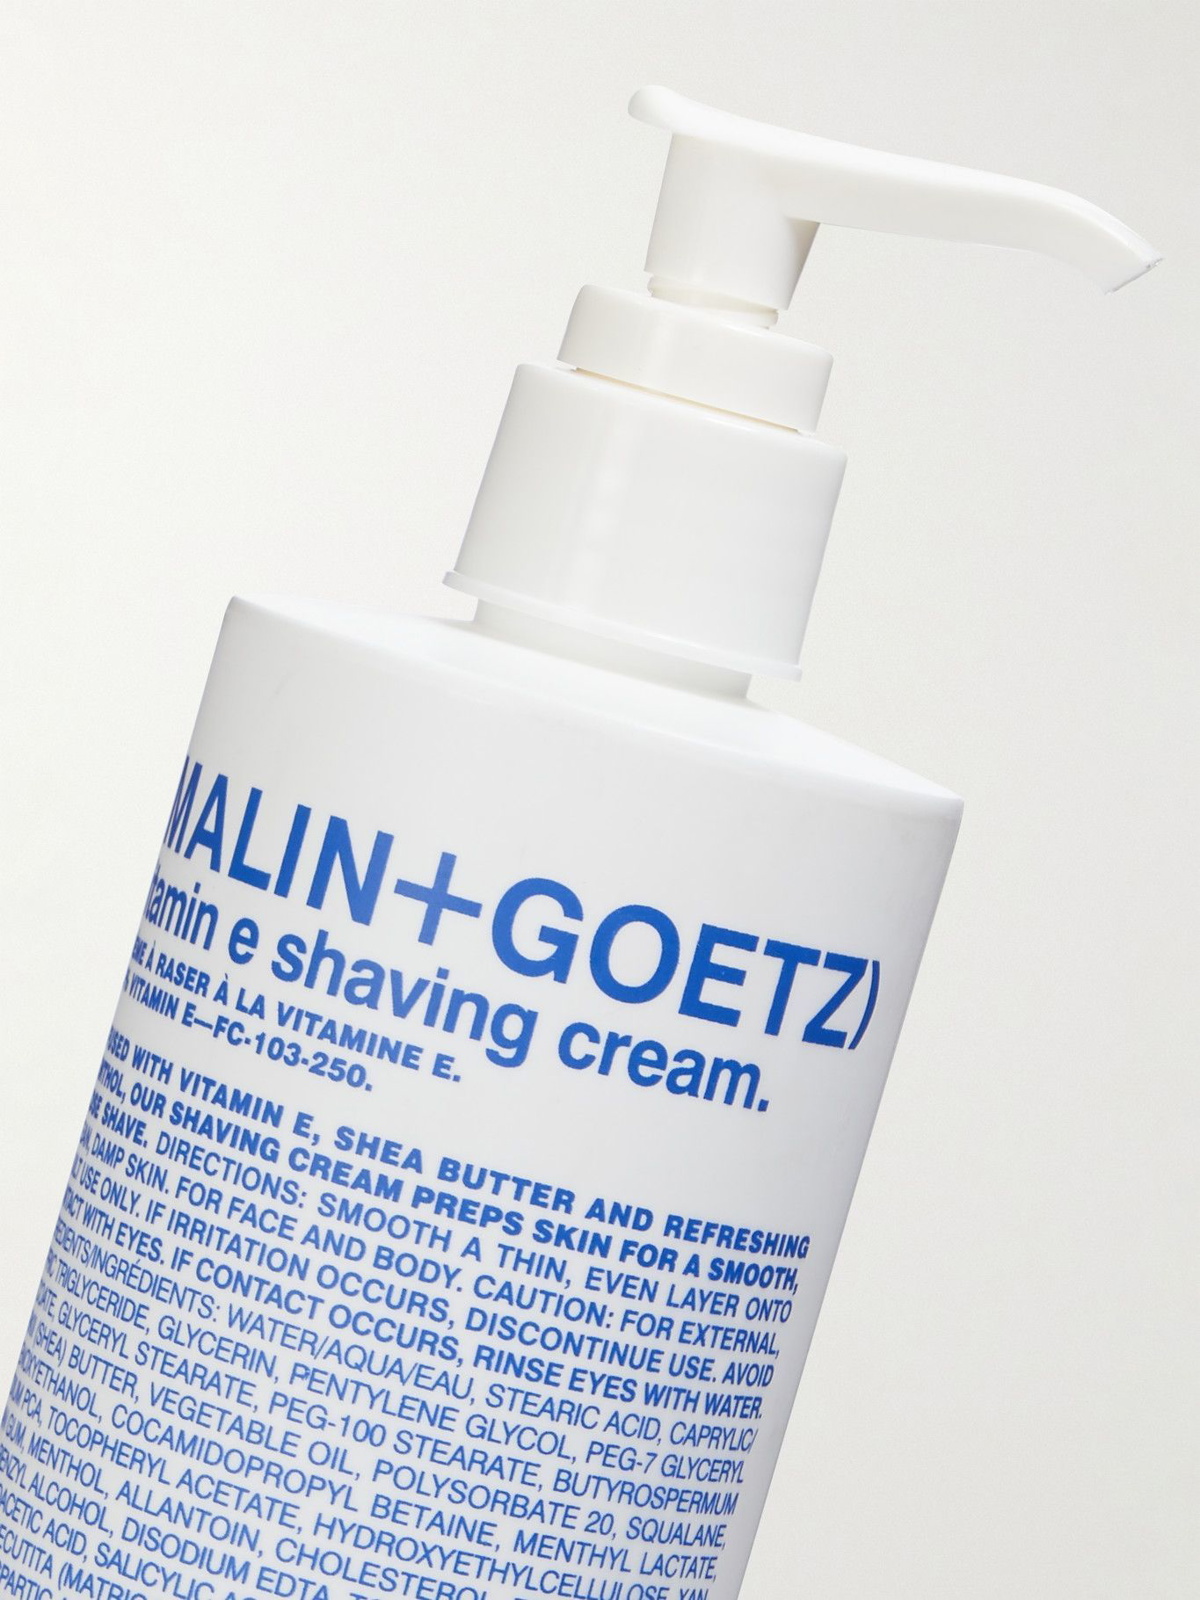 Malin Goetz - Vitamin E Shaving Cream, 250ml